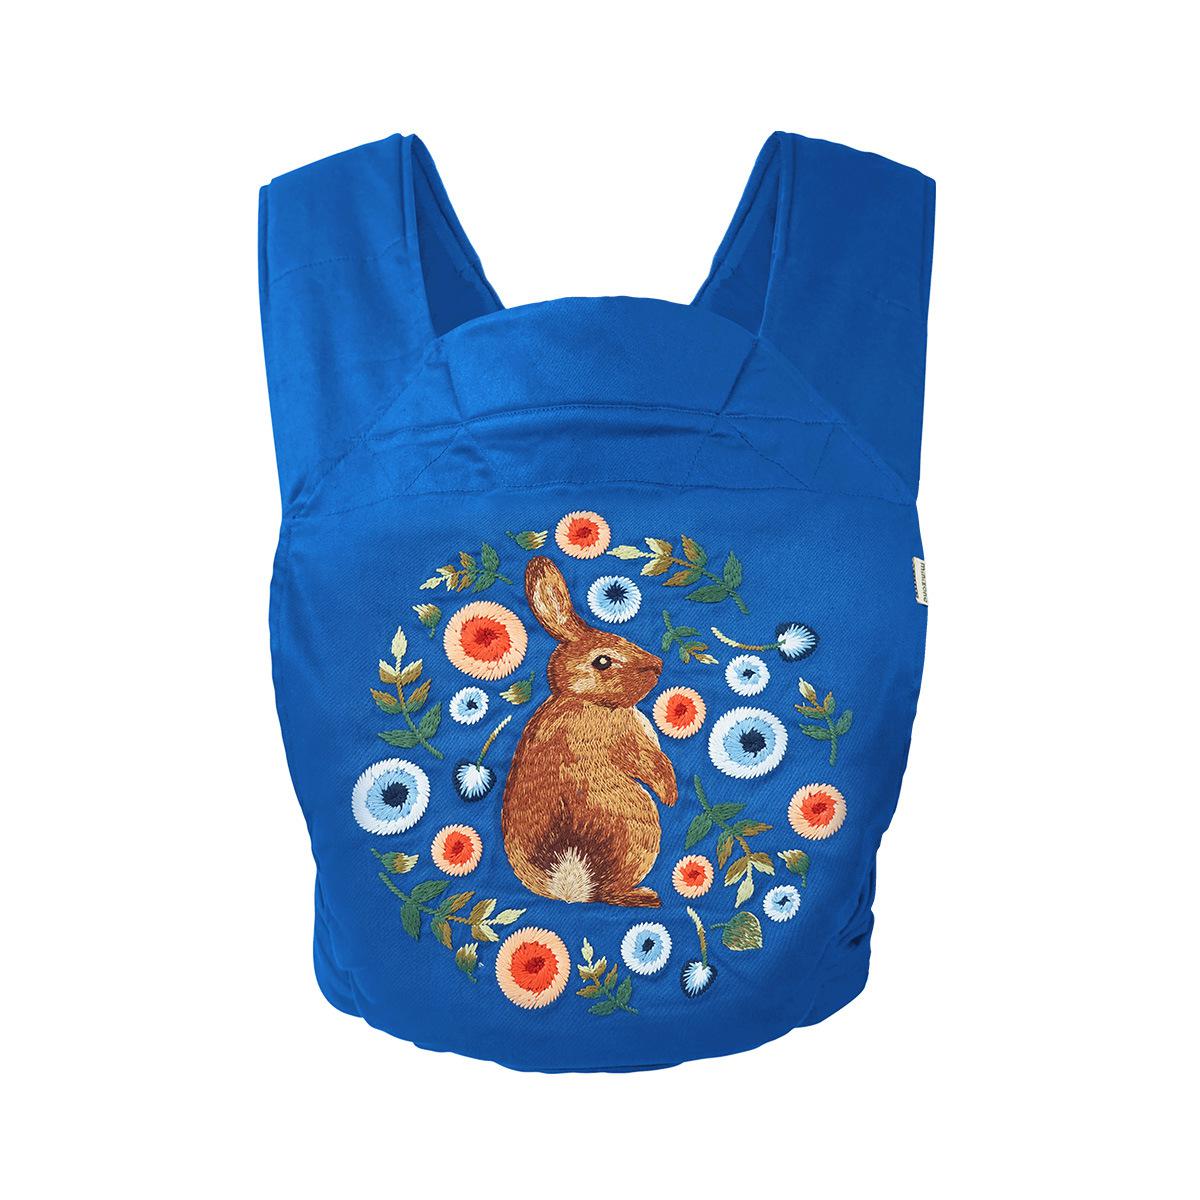 Orangmom officiel butik baby slynge baby rejse slynge børn slynge taske bomuld stribet rygsæk tilbage slynge til baby: Dbuletz